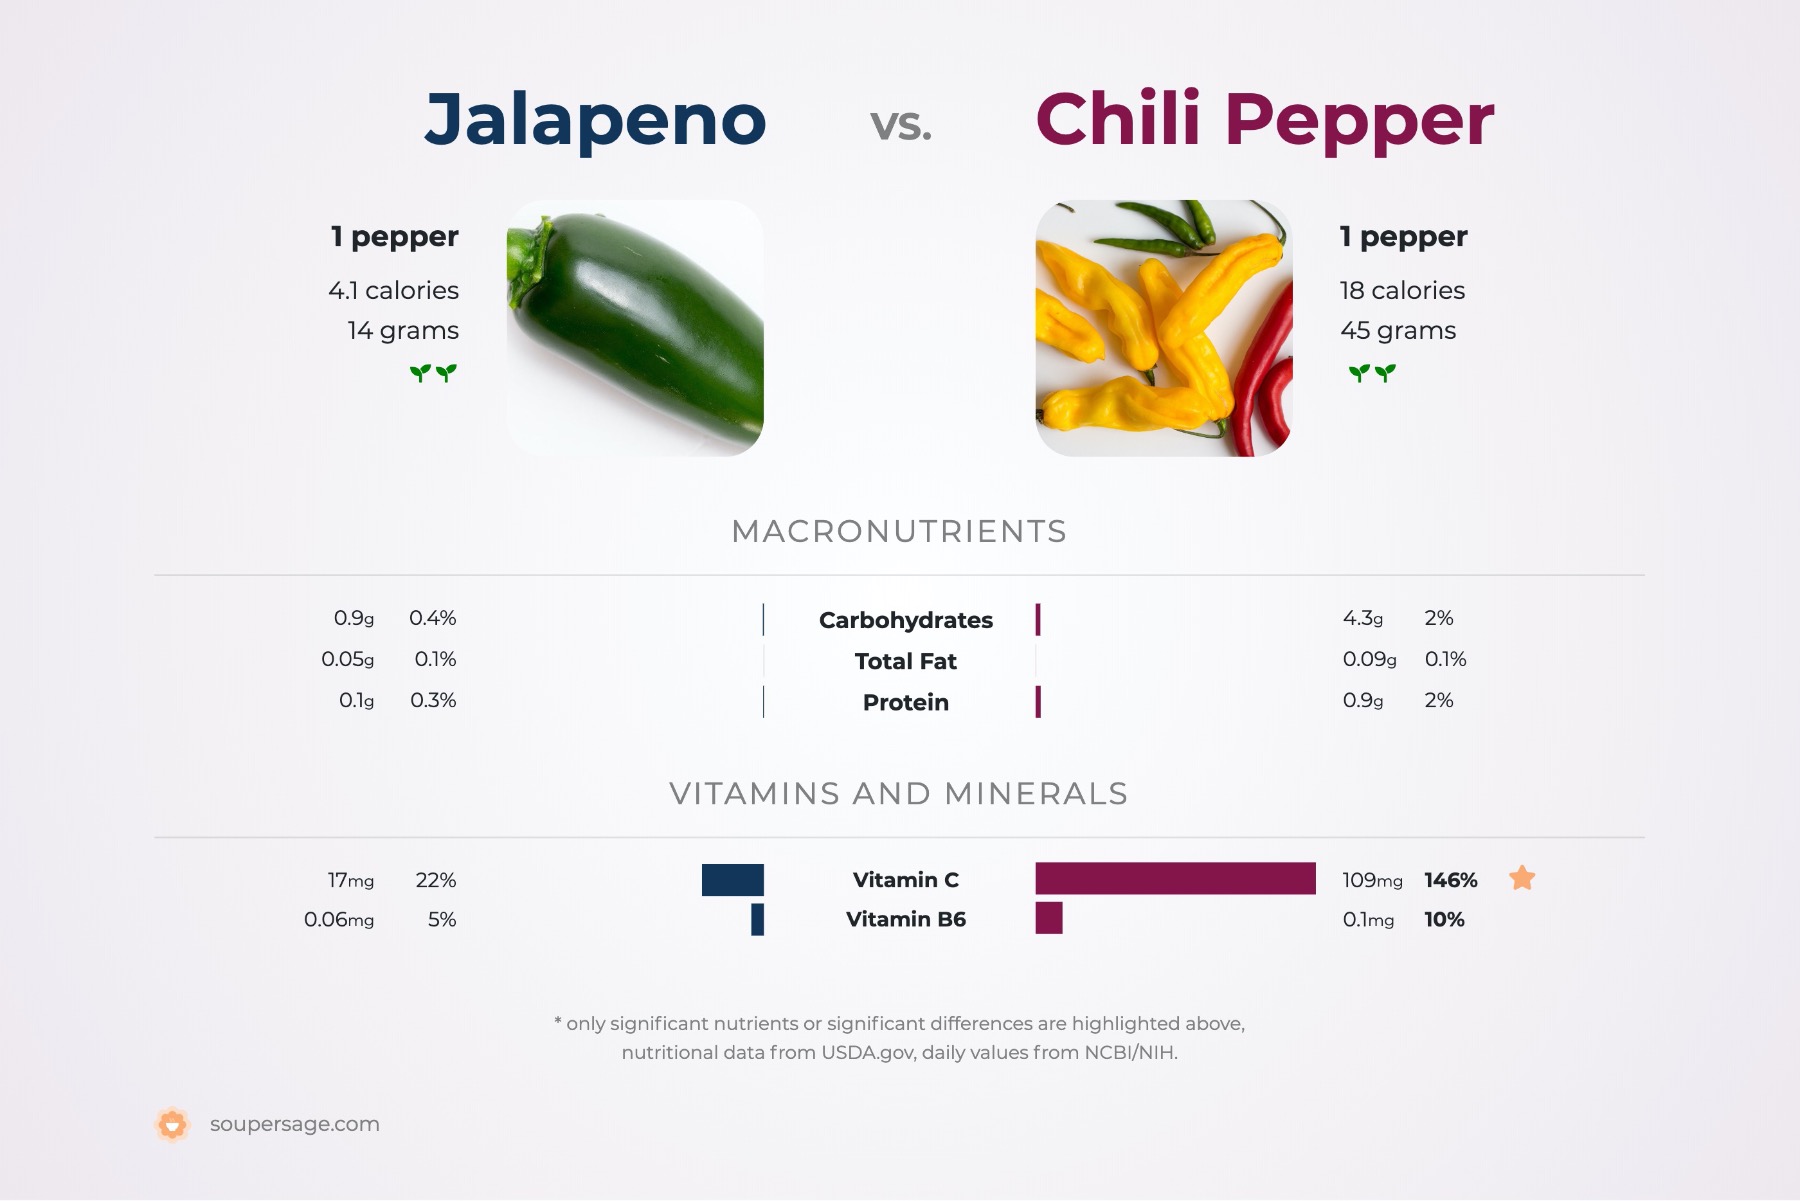 nutrition comparison of chili pepper vs. jalapeno